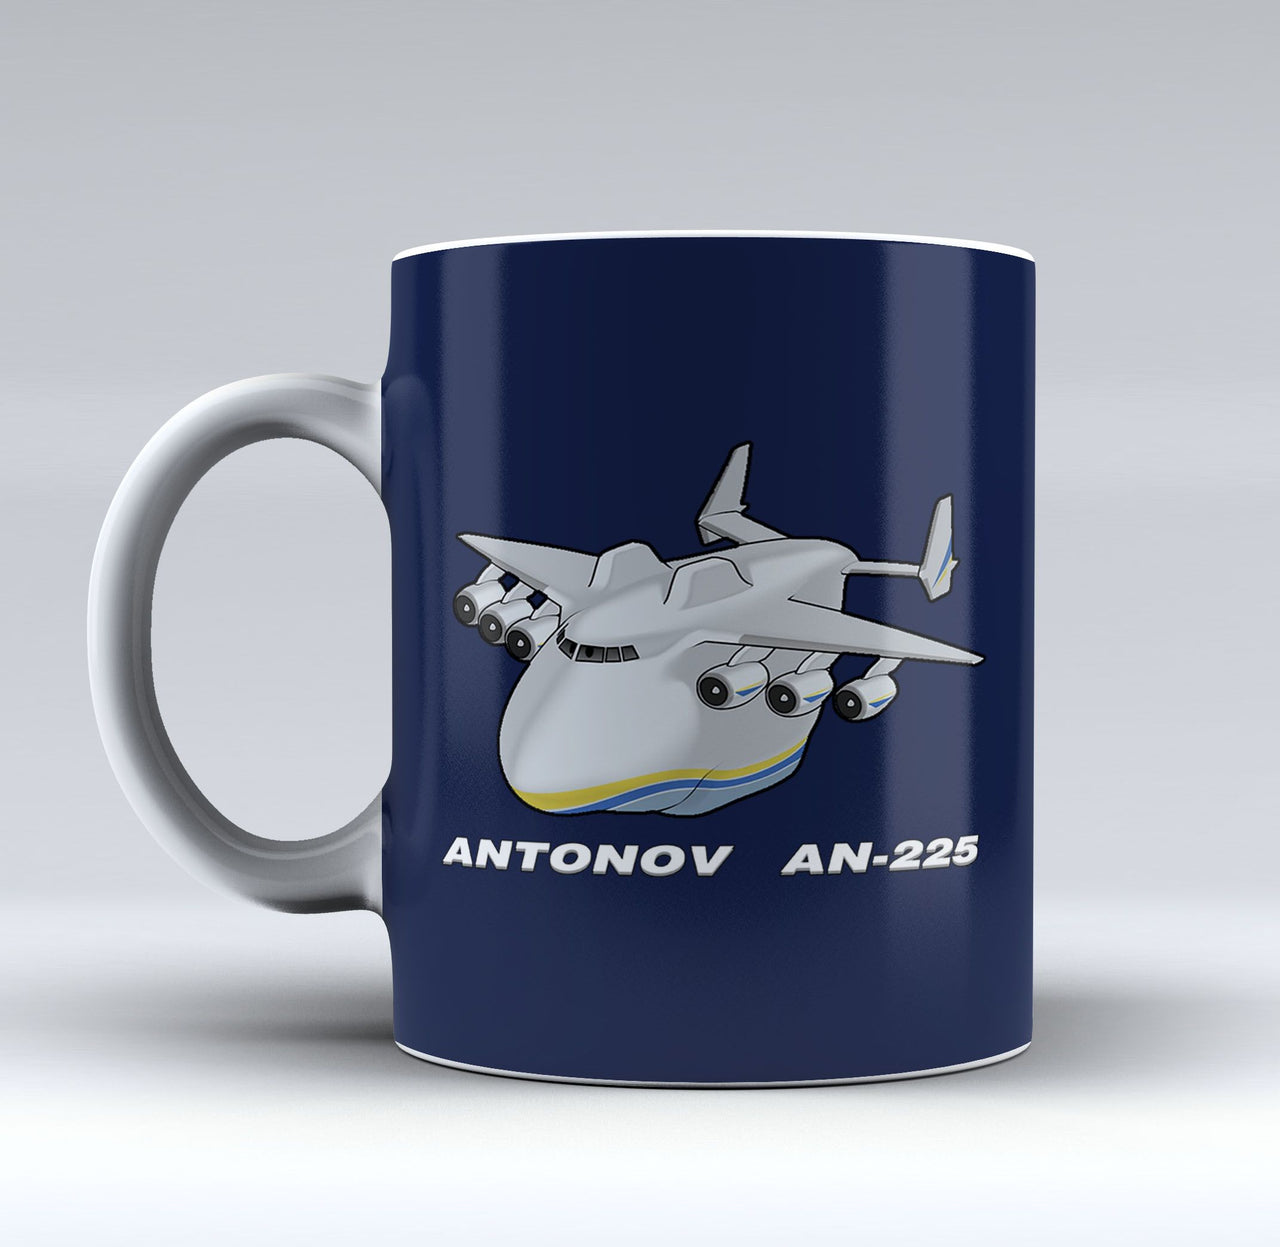 Antonov AN-225 (29) Designed Mugs